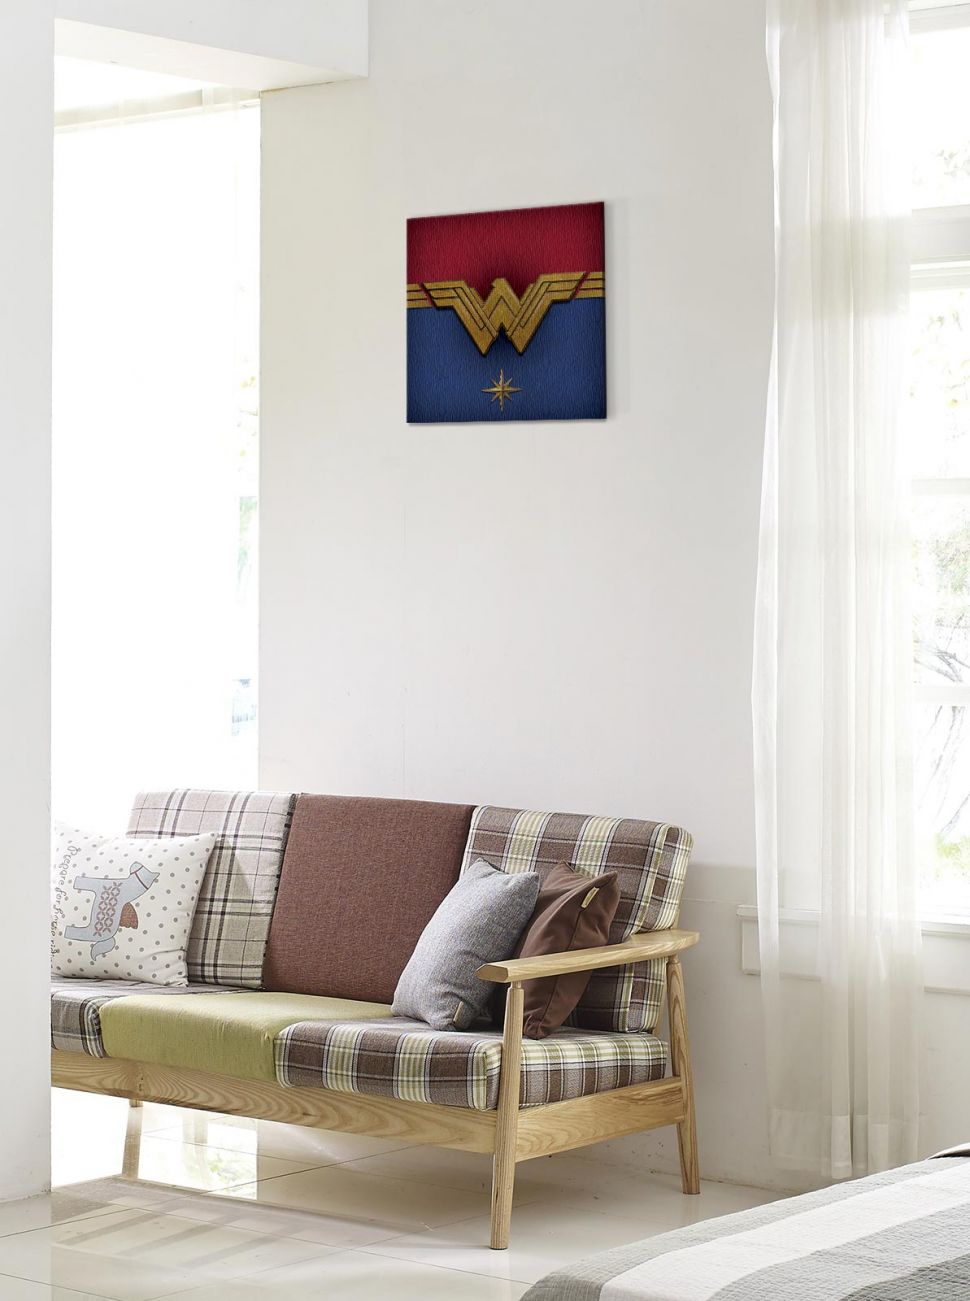 Obraz na płótnie o nazwie Wonder Woman Emblem wiszący na białej ścianie nad kanapą